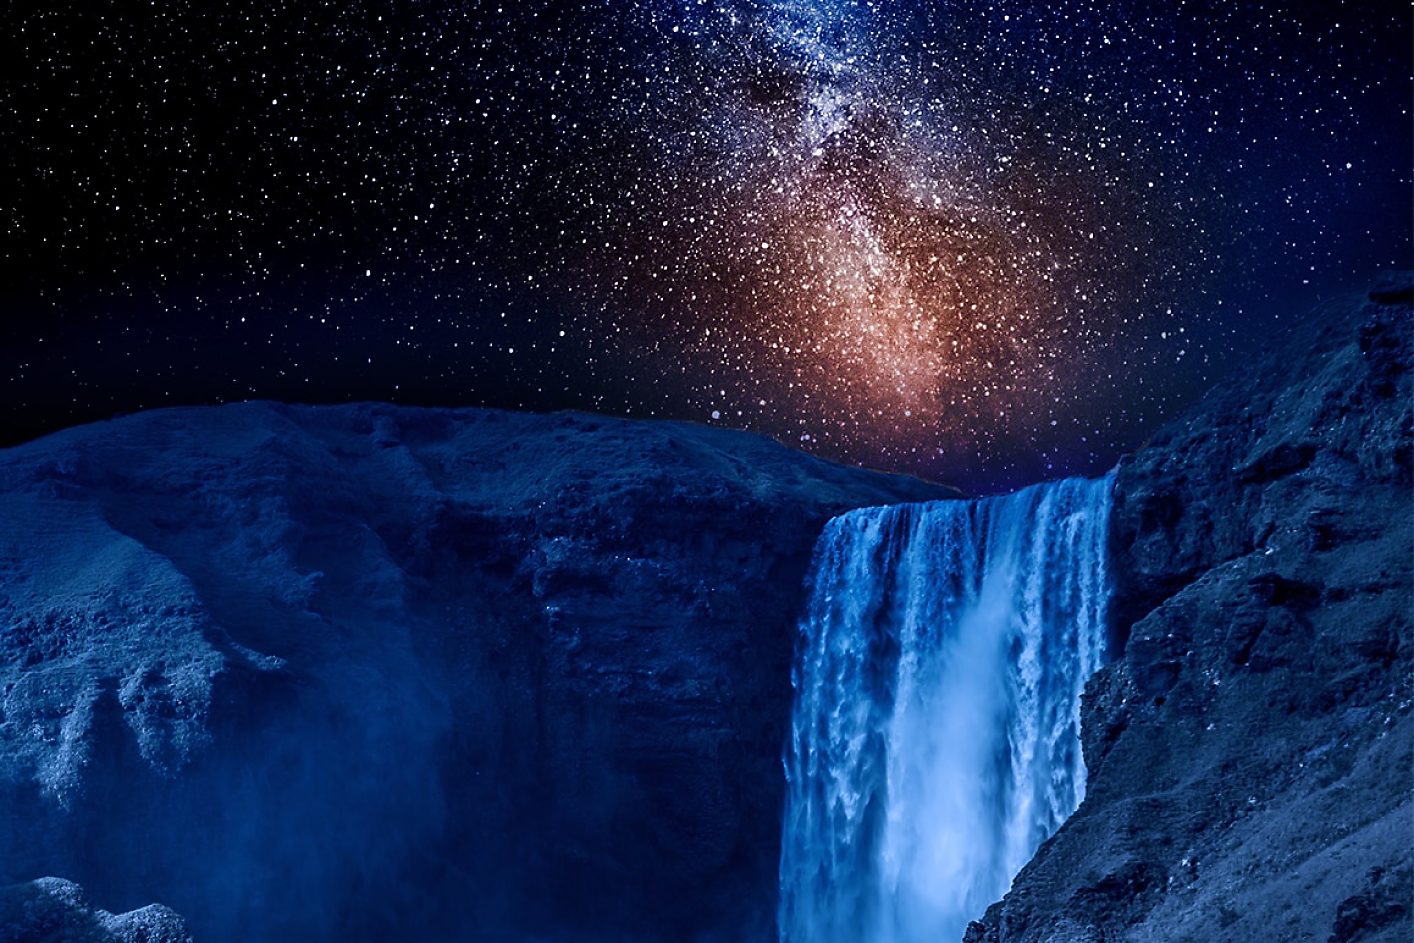 Image spectaculaire de ciel nocturne au-dessus d’une chute d’eau